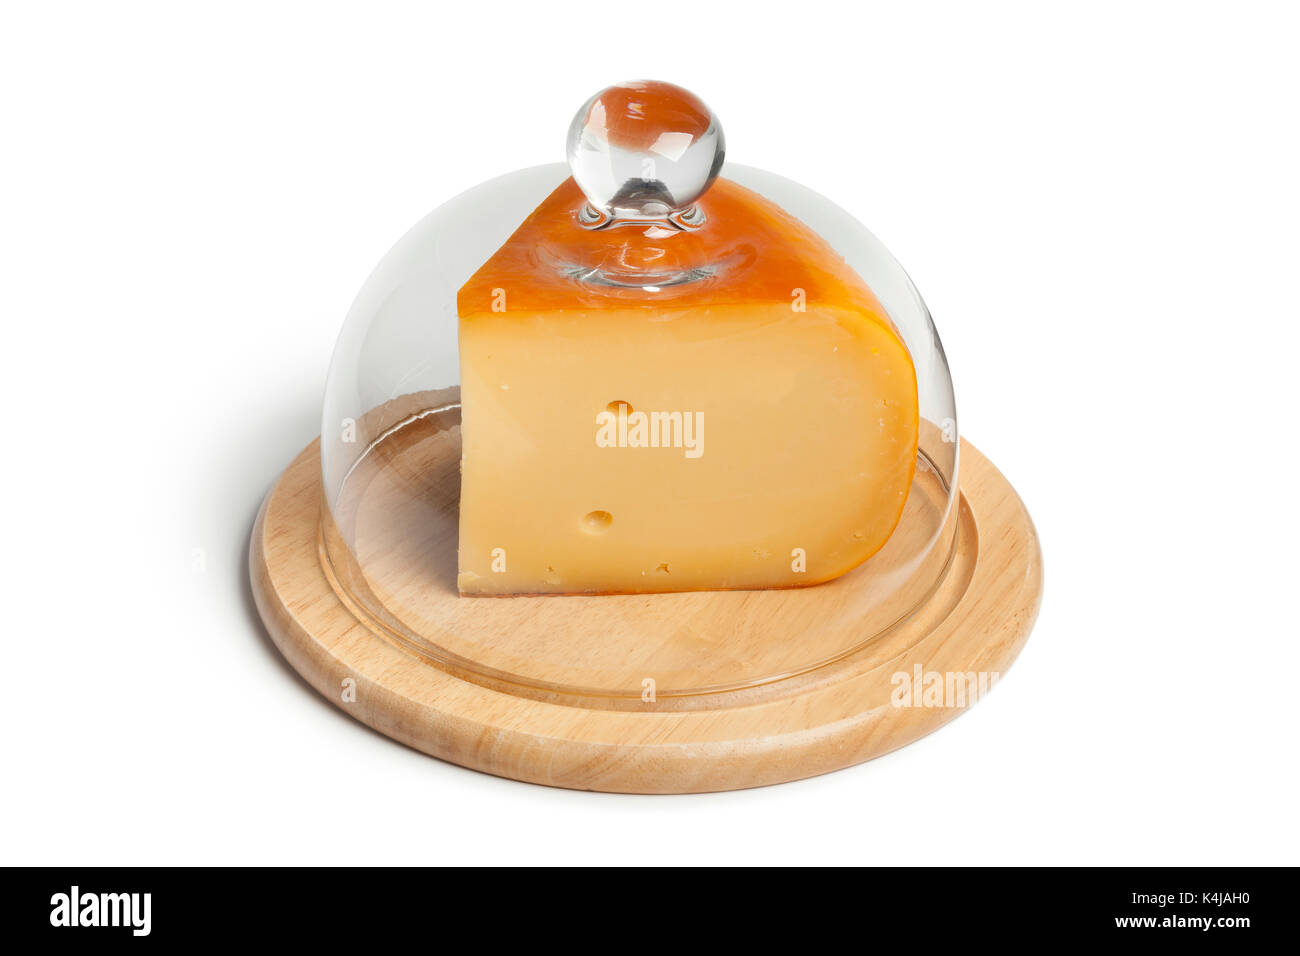 Morceau de fromage gouda néerlandais sur une planche en bois recouverte d'un capot en verre Banque D'Images